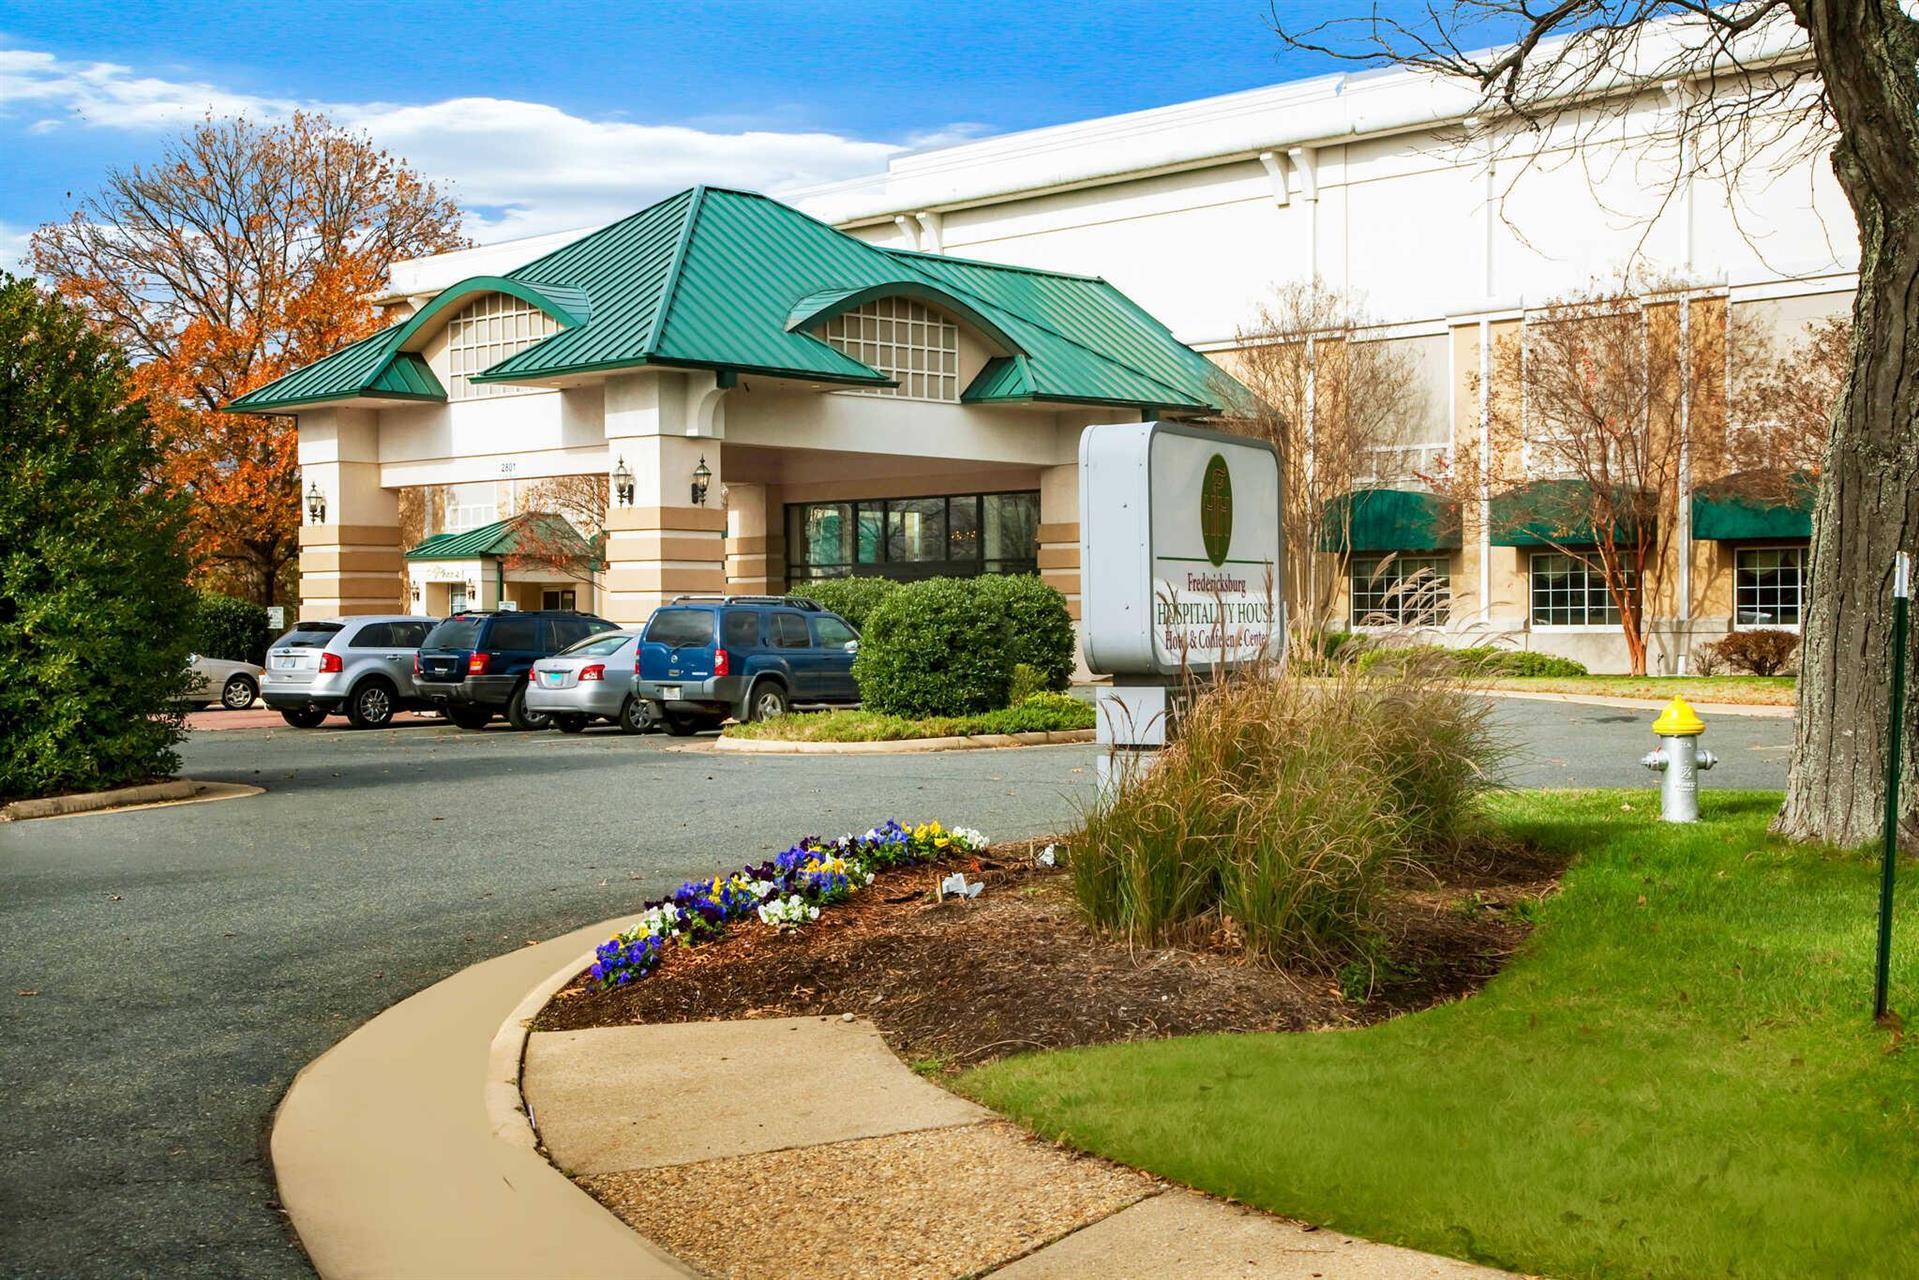 Clarion Hotel & Suites - Convention Center Fredericksburg in Fredericksburg, VA